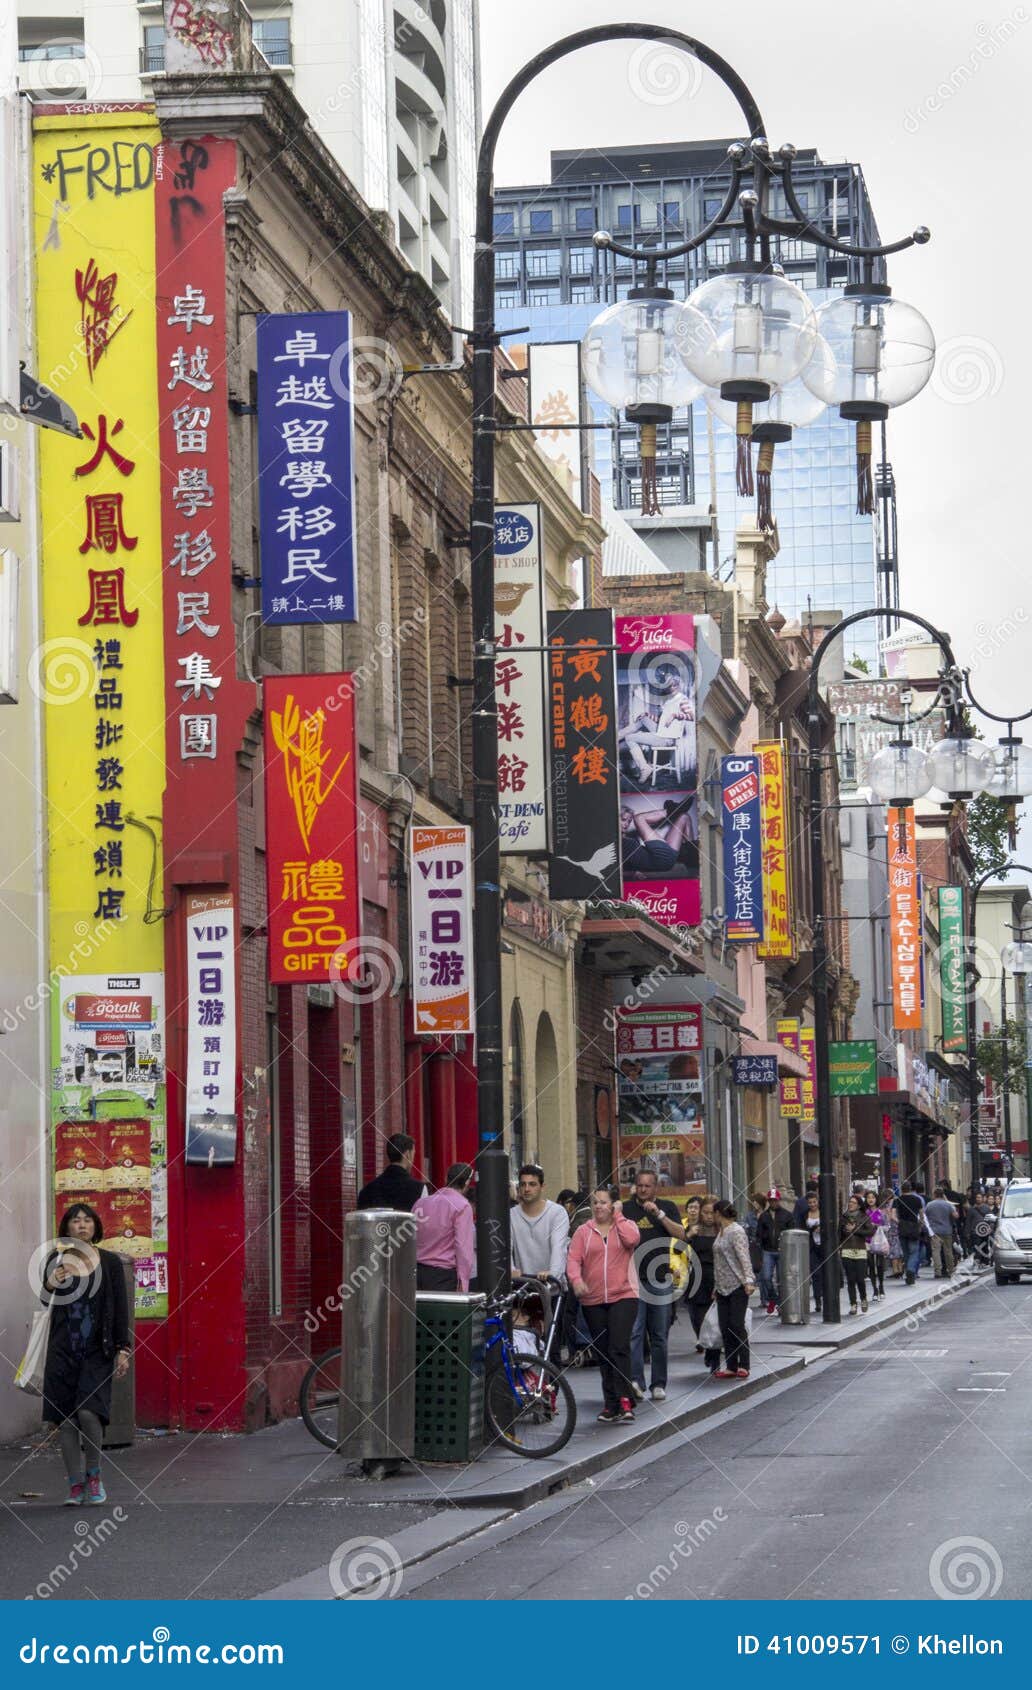 Chinatown, Melbourne. Melbourne, Australia 18 de marzo de 2013: Apresurar Chinatown Chinatown en 1854 de Melbourne establecida es el acuerdo chino continuo más largo del mundo occidental